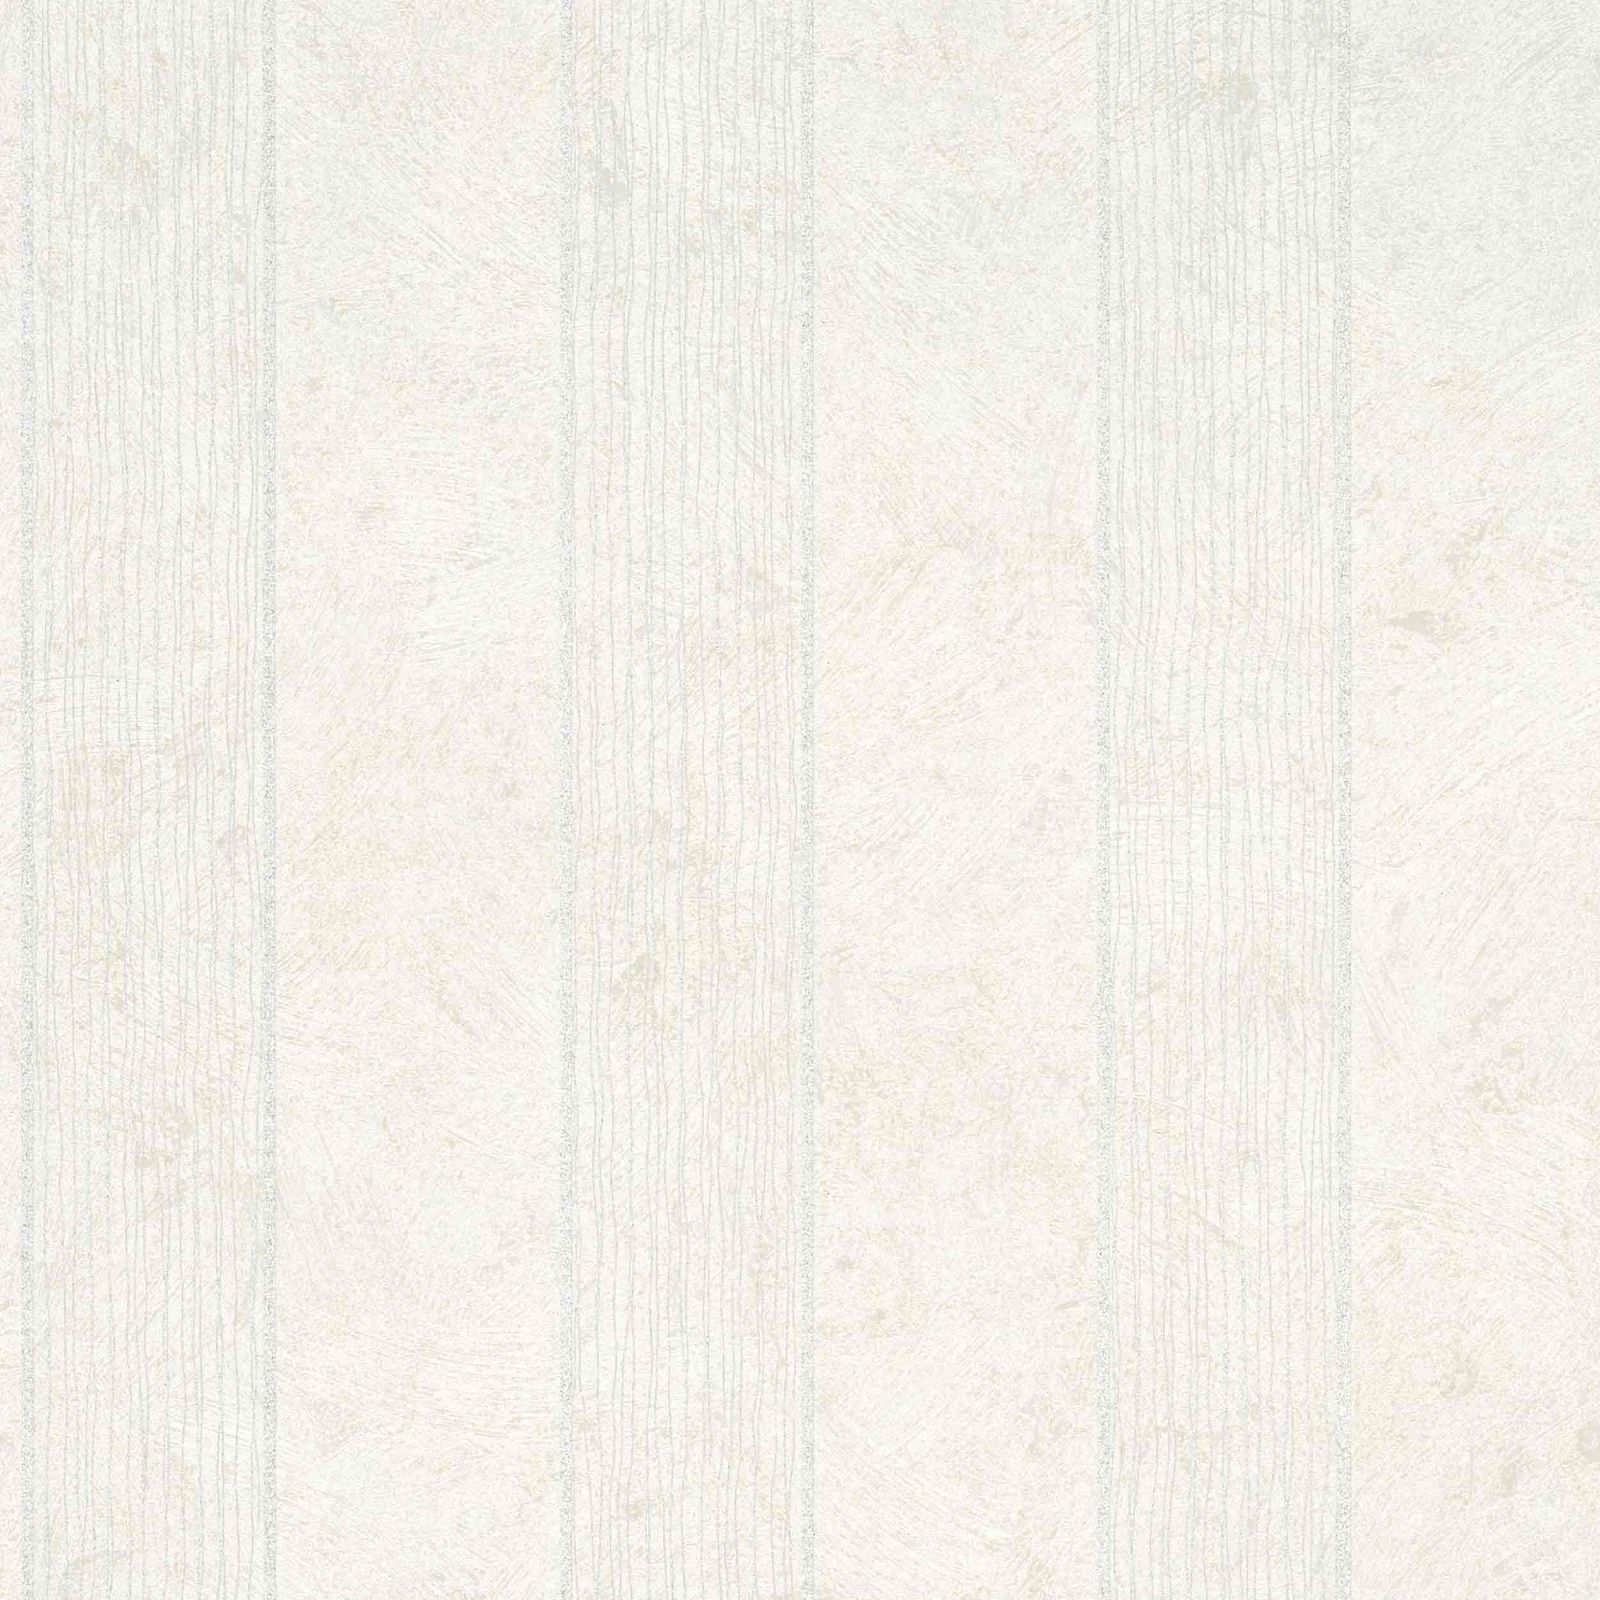 Creme Hintergrundbild 1600x1600. Non Woven Wallpaper Striped Plaster Cream White Silver Metallic 56833